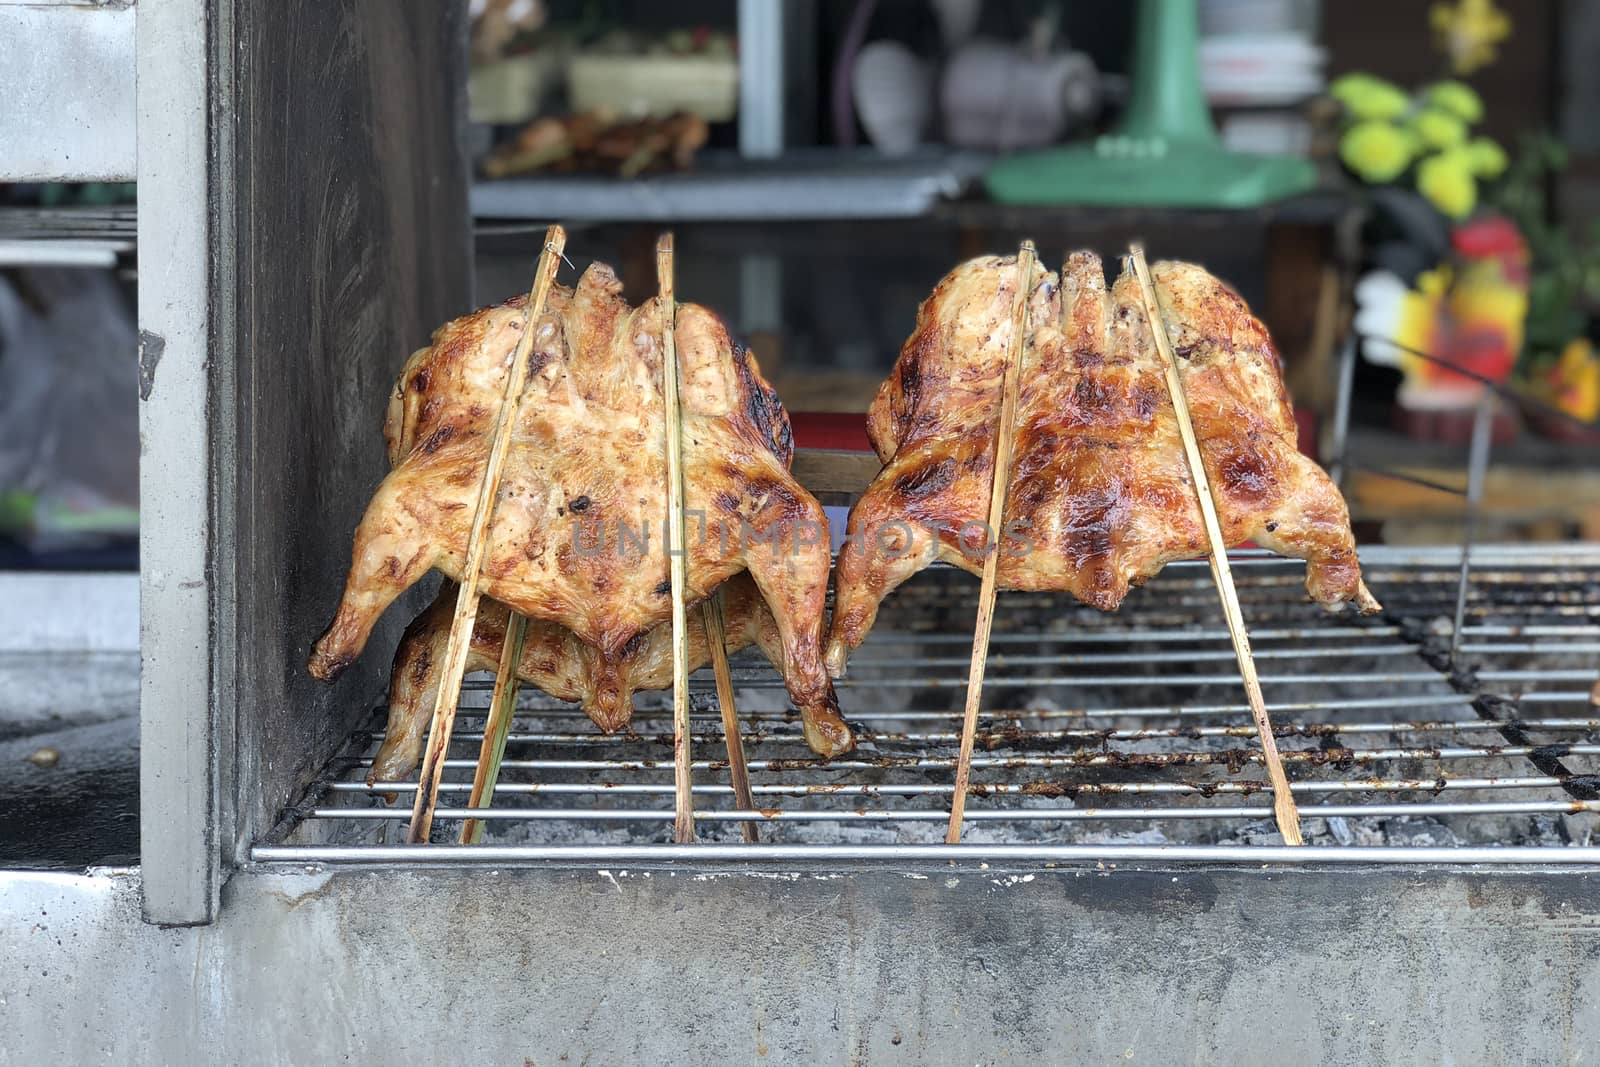 Grilled chicken. Thai food Local northeast street food. by Surasak